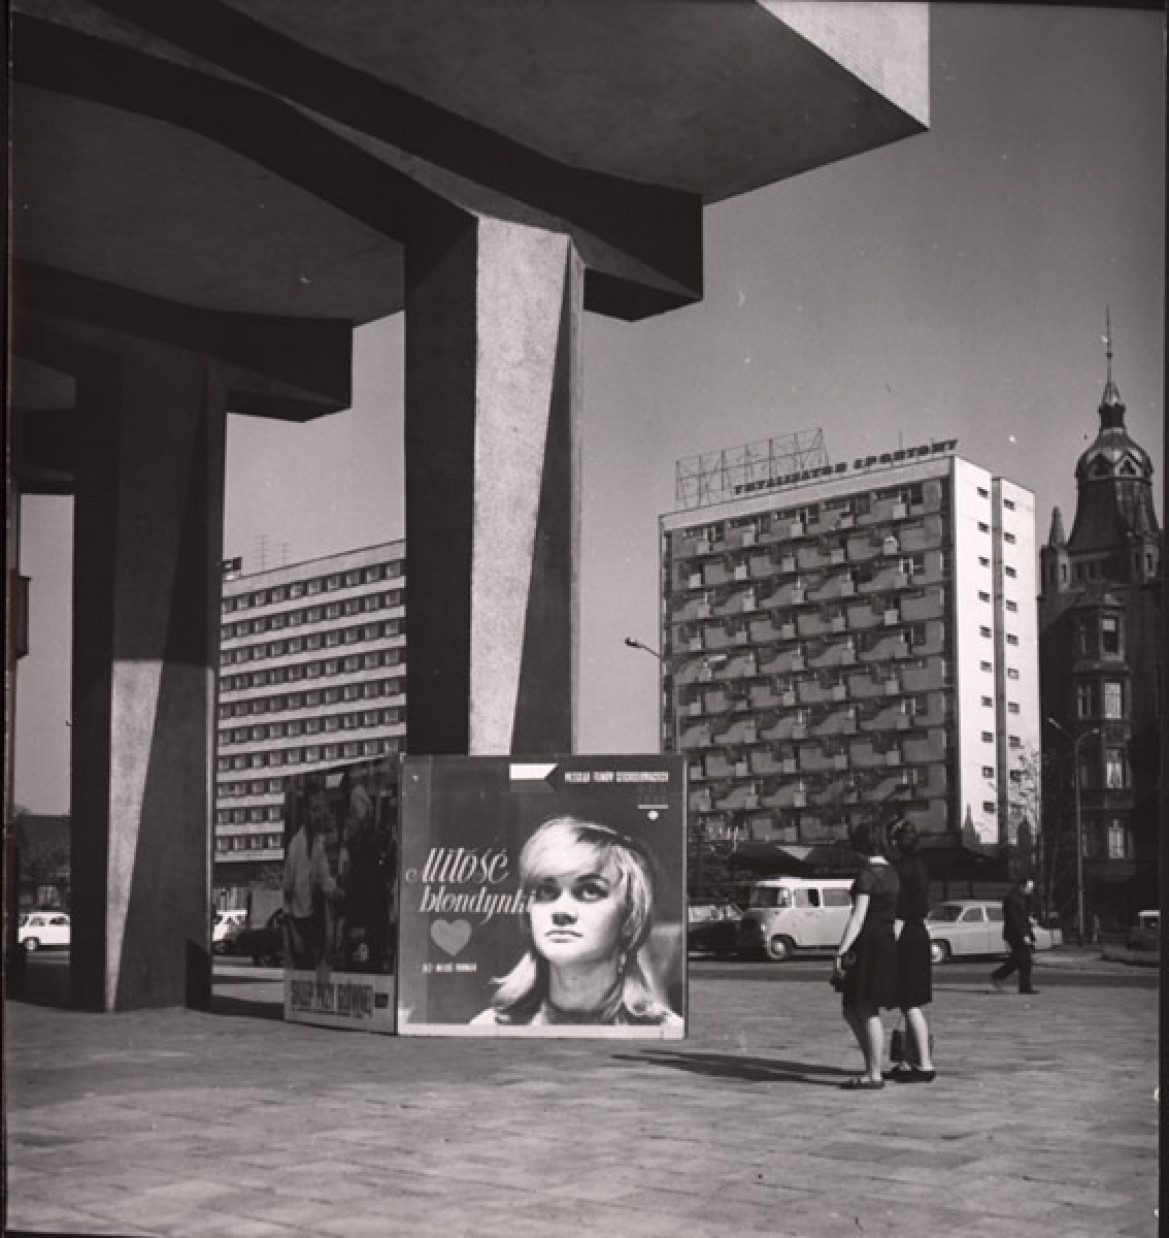 Chojnacka Anna, Plakaty filmowe, Hotel Katowice, 1970-1980, wł. Muzeum Historii Katowic